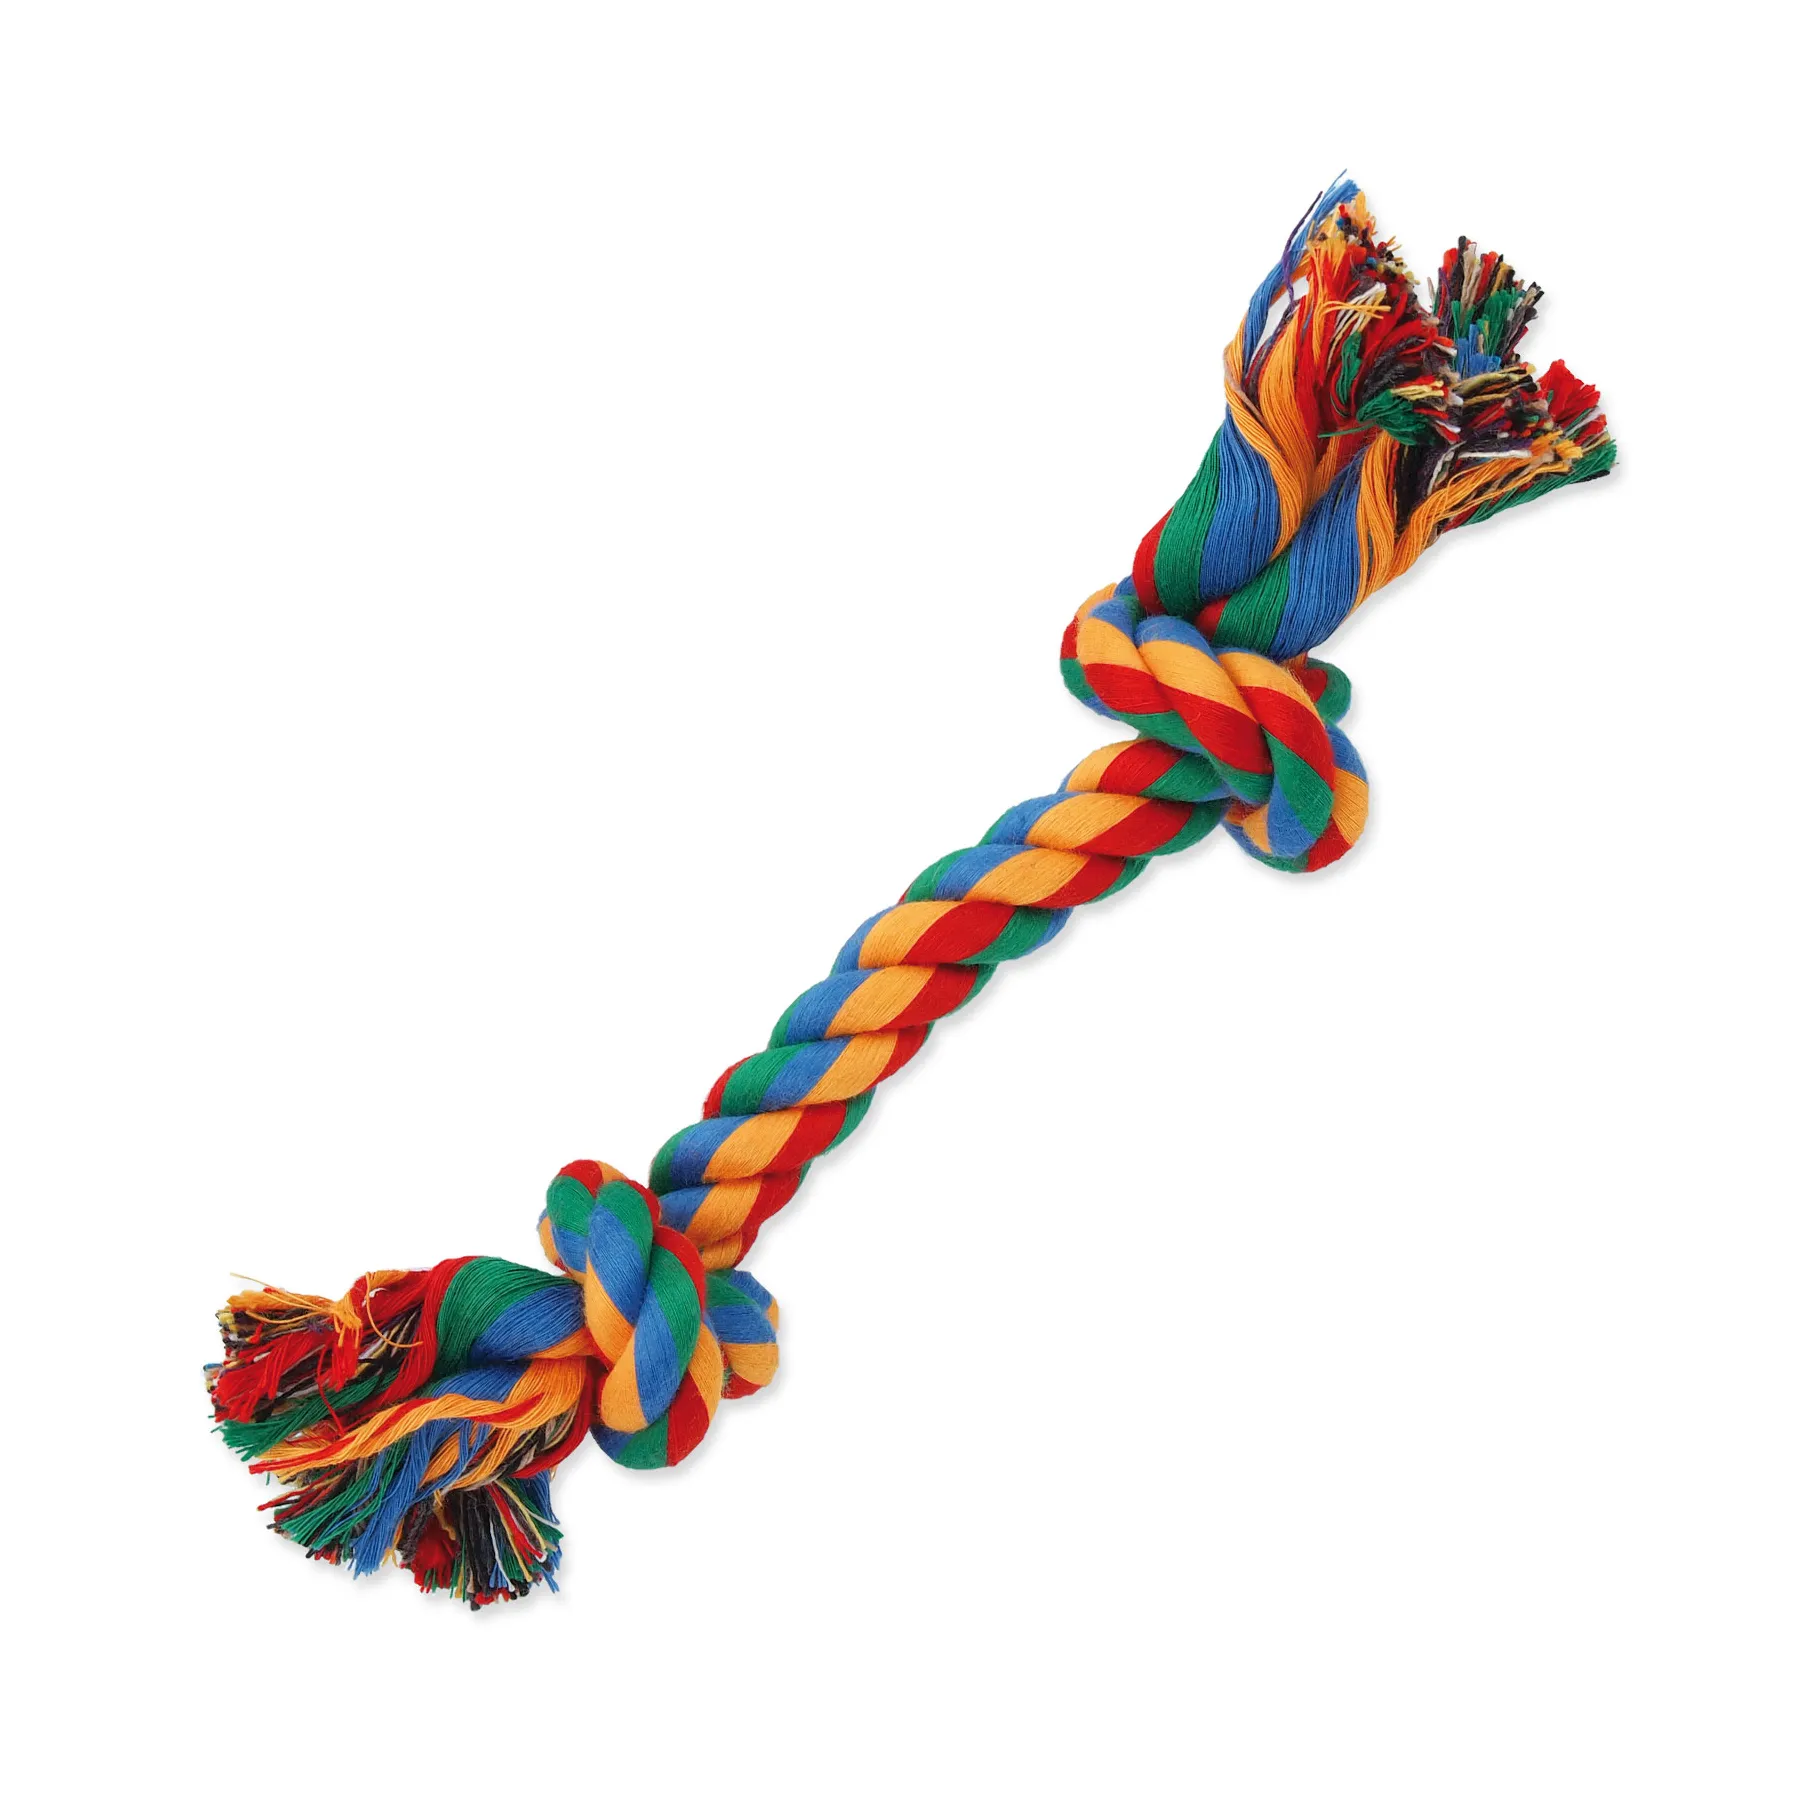 Dog Fantasy Hračka uzel bavlněný barevný 2 knoty 20 cm